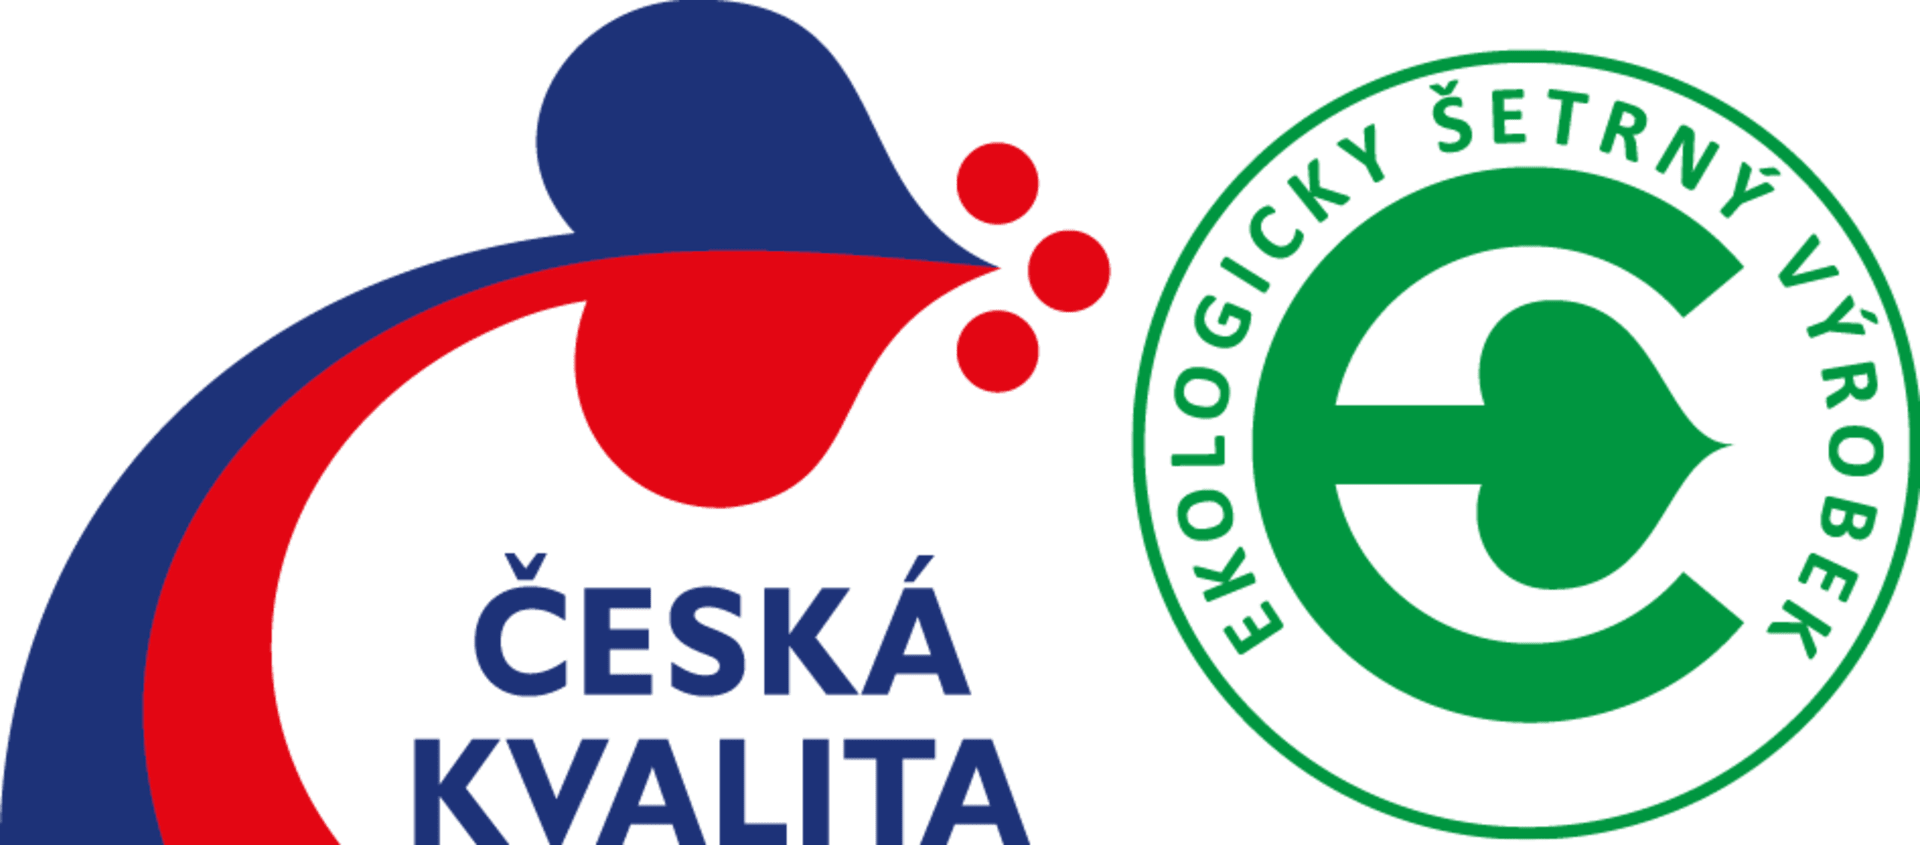 Národní ekoznačky Ekologicky šetrný výrobek a Ekologicky šetrná služba jsou také součástí programu Česká kvalita.